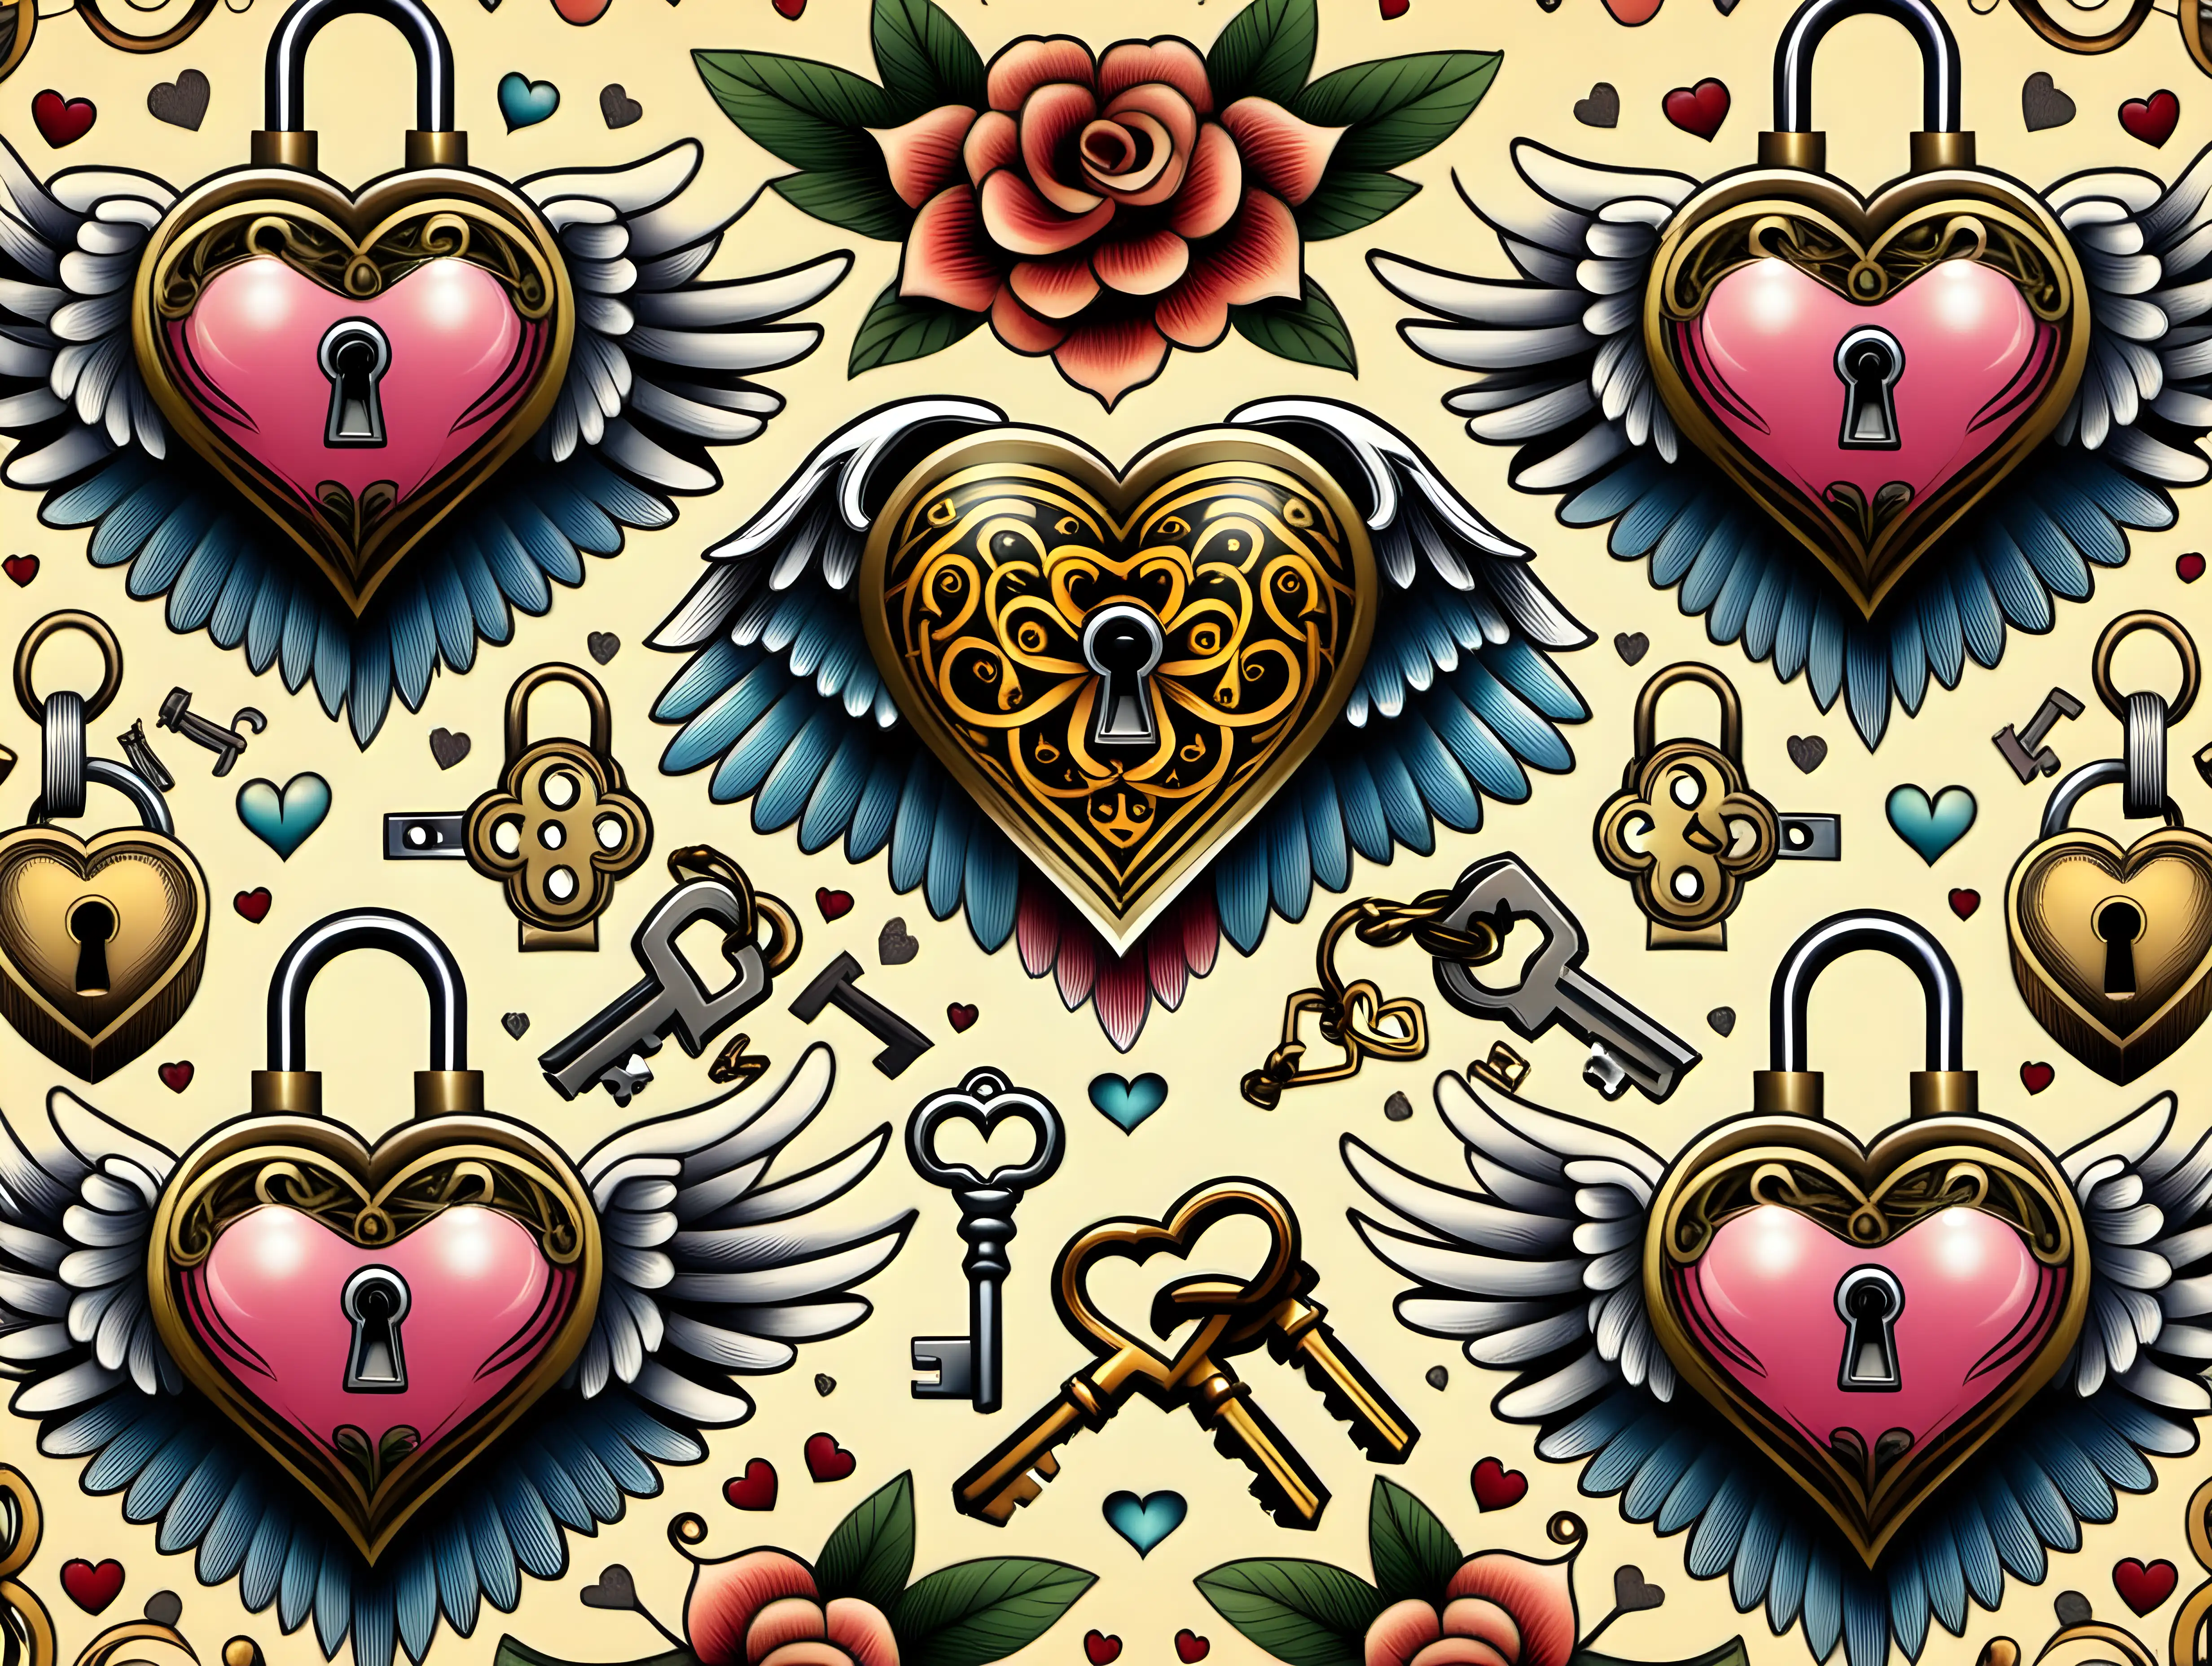 Pattern seamless, Oldschool tattoo Design, heart, wings,  angel sweet, flower, padlock, key, colorful